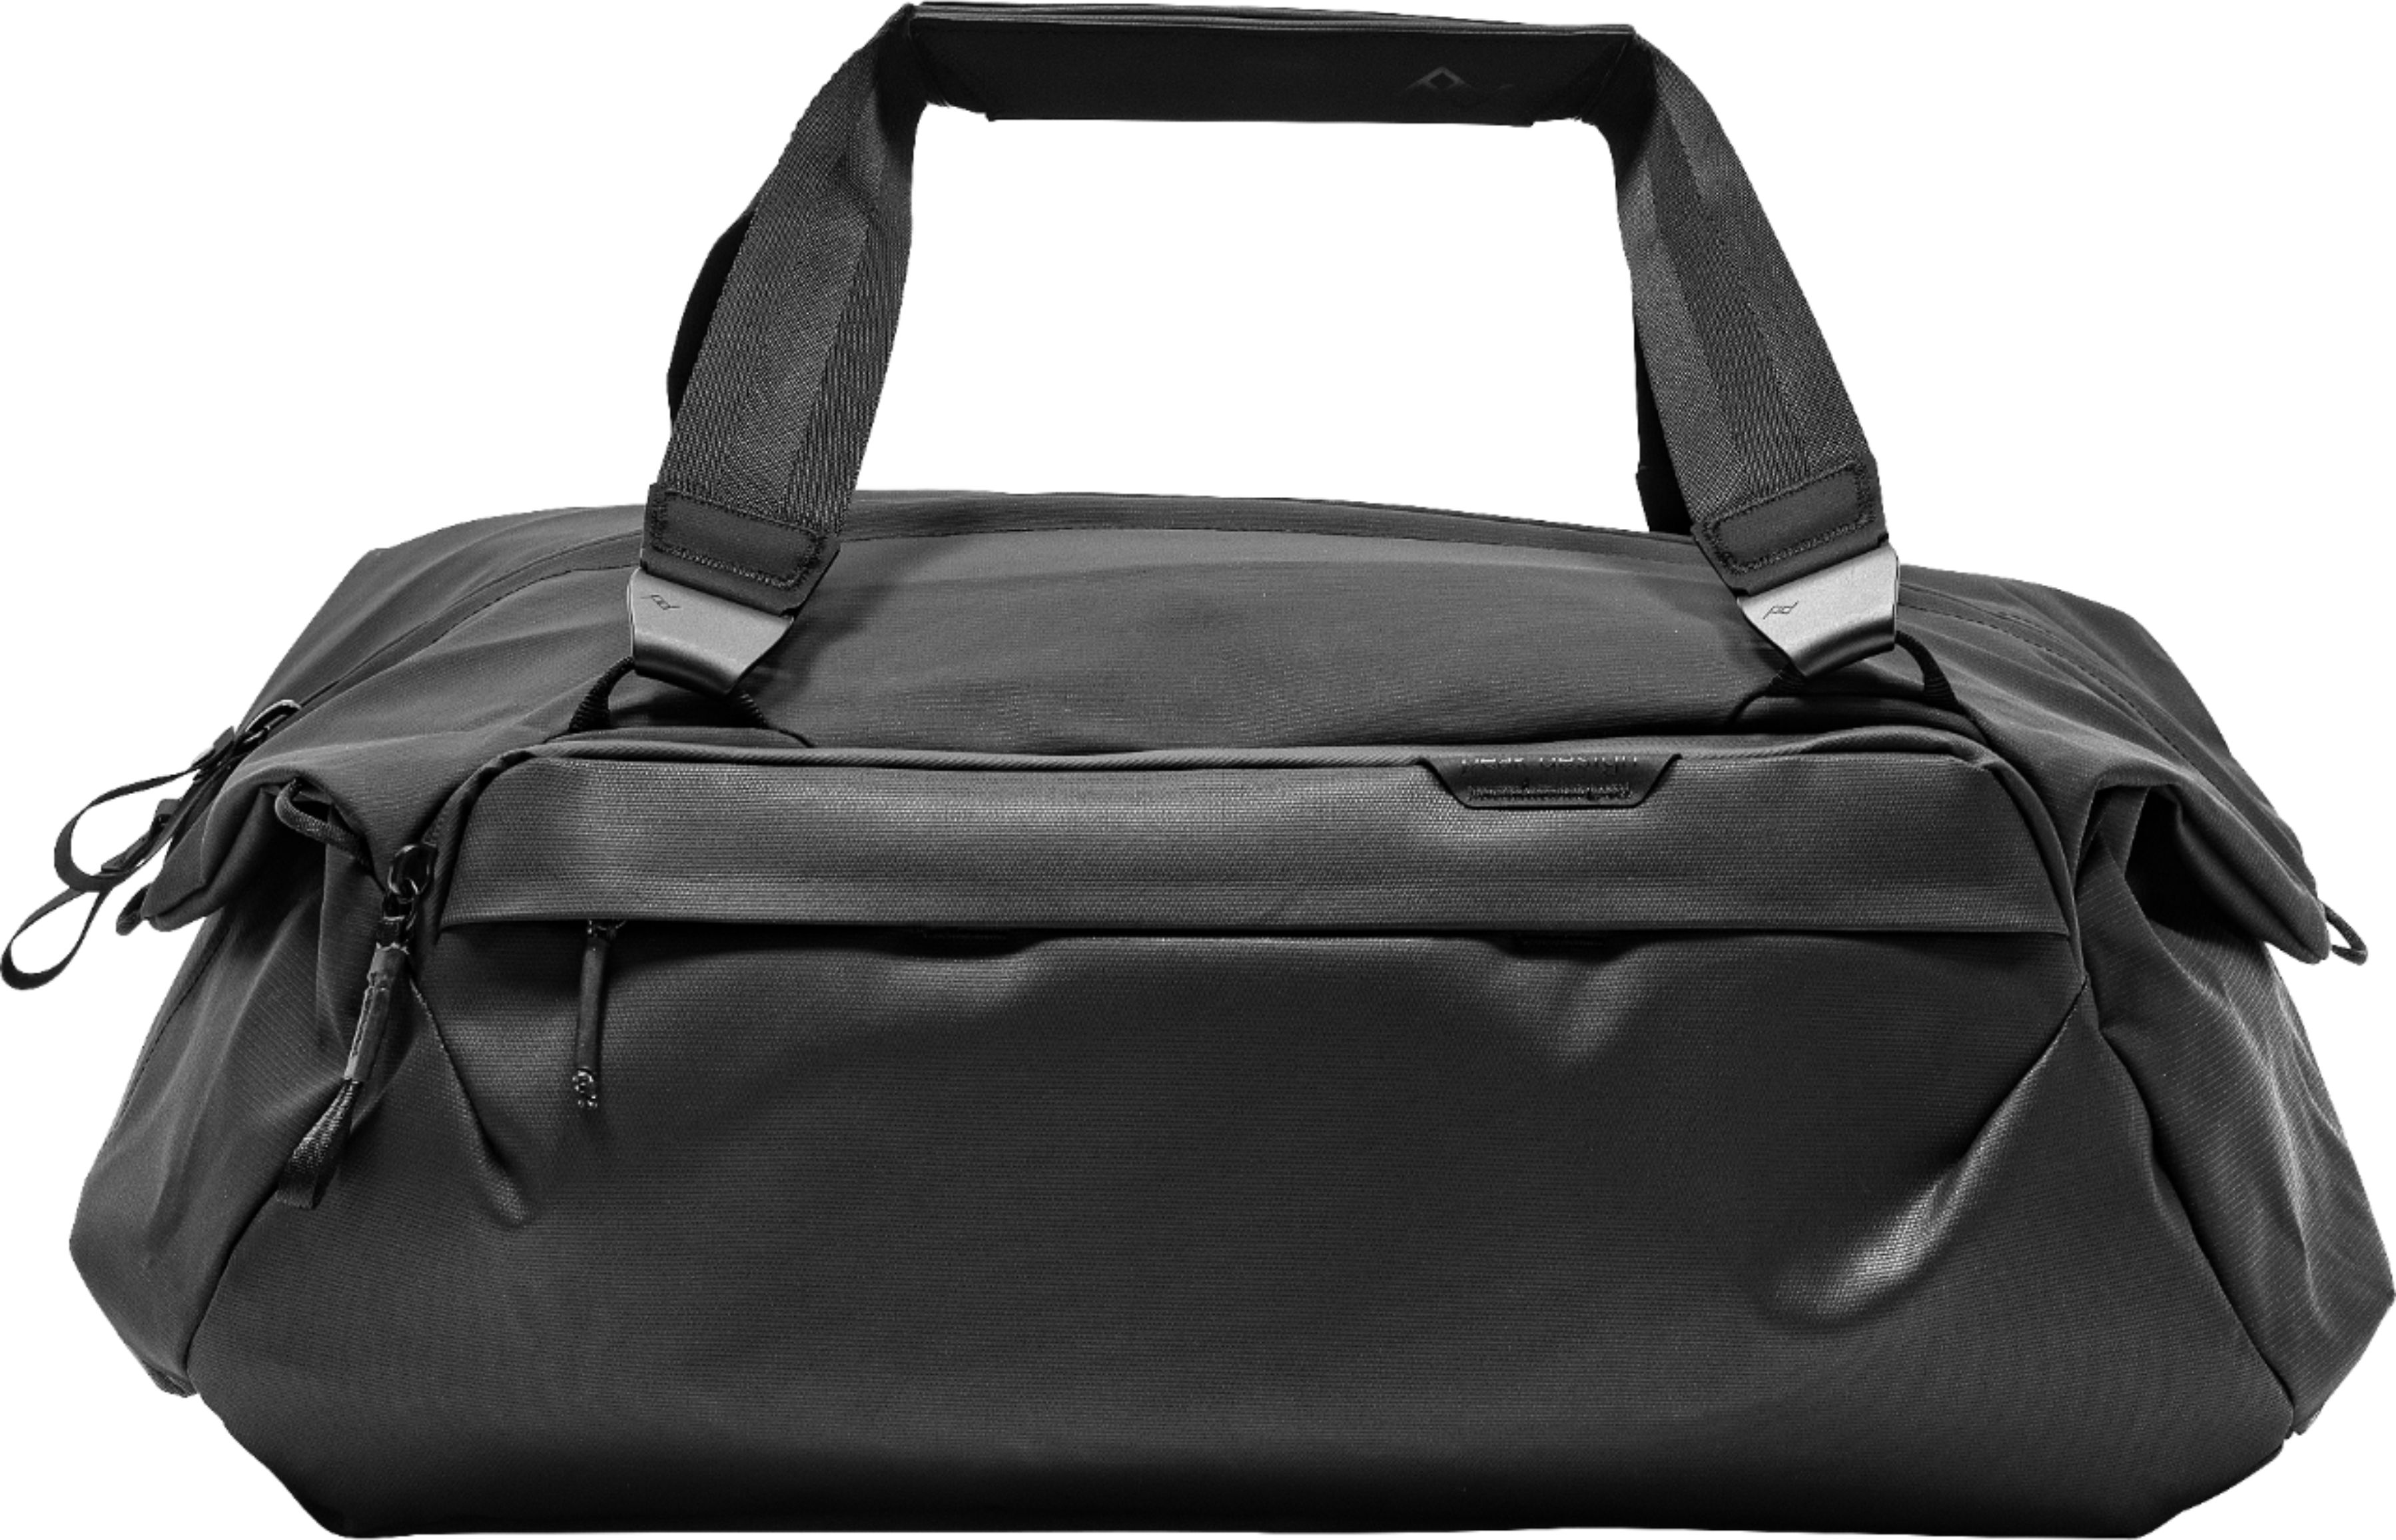 Angle View: Peak Design - 24" Travel Duffel Bag - Black